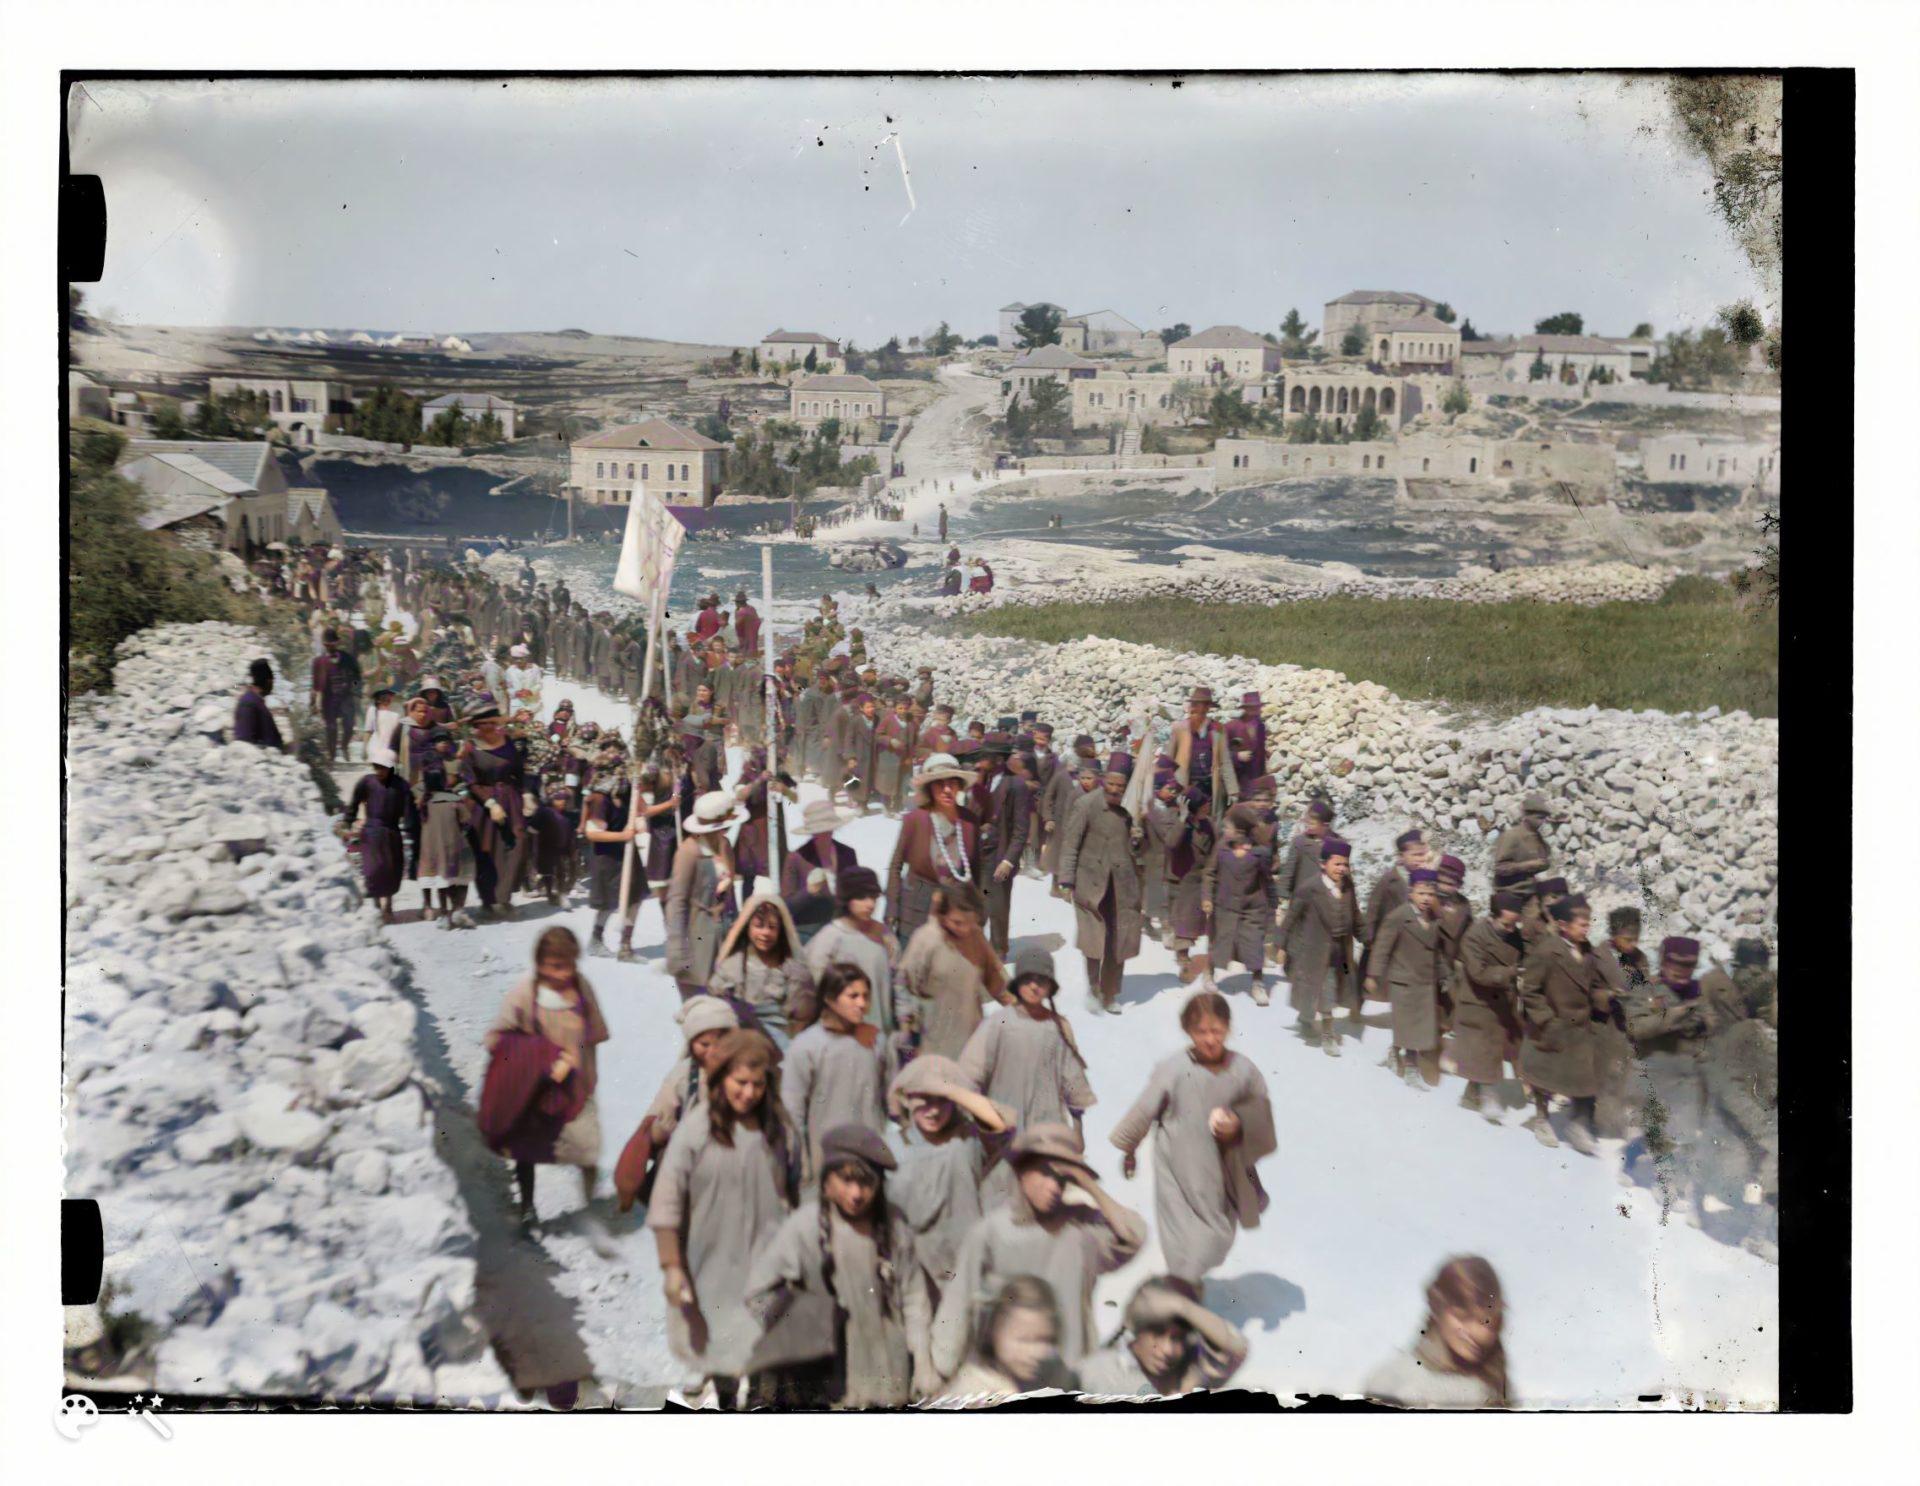 ילדים ומבוגרים יהודים צועדים בדרך שכם לכיוון קבר שמעון הצדיק, 1918. מספר תמונה: LC-DIG-matpc-11748